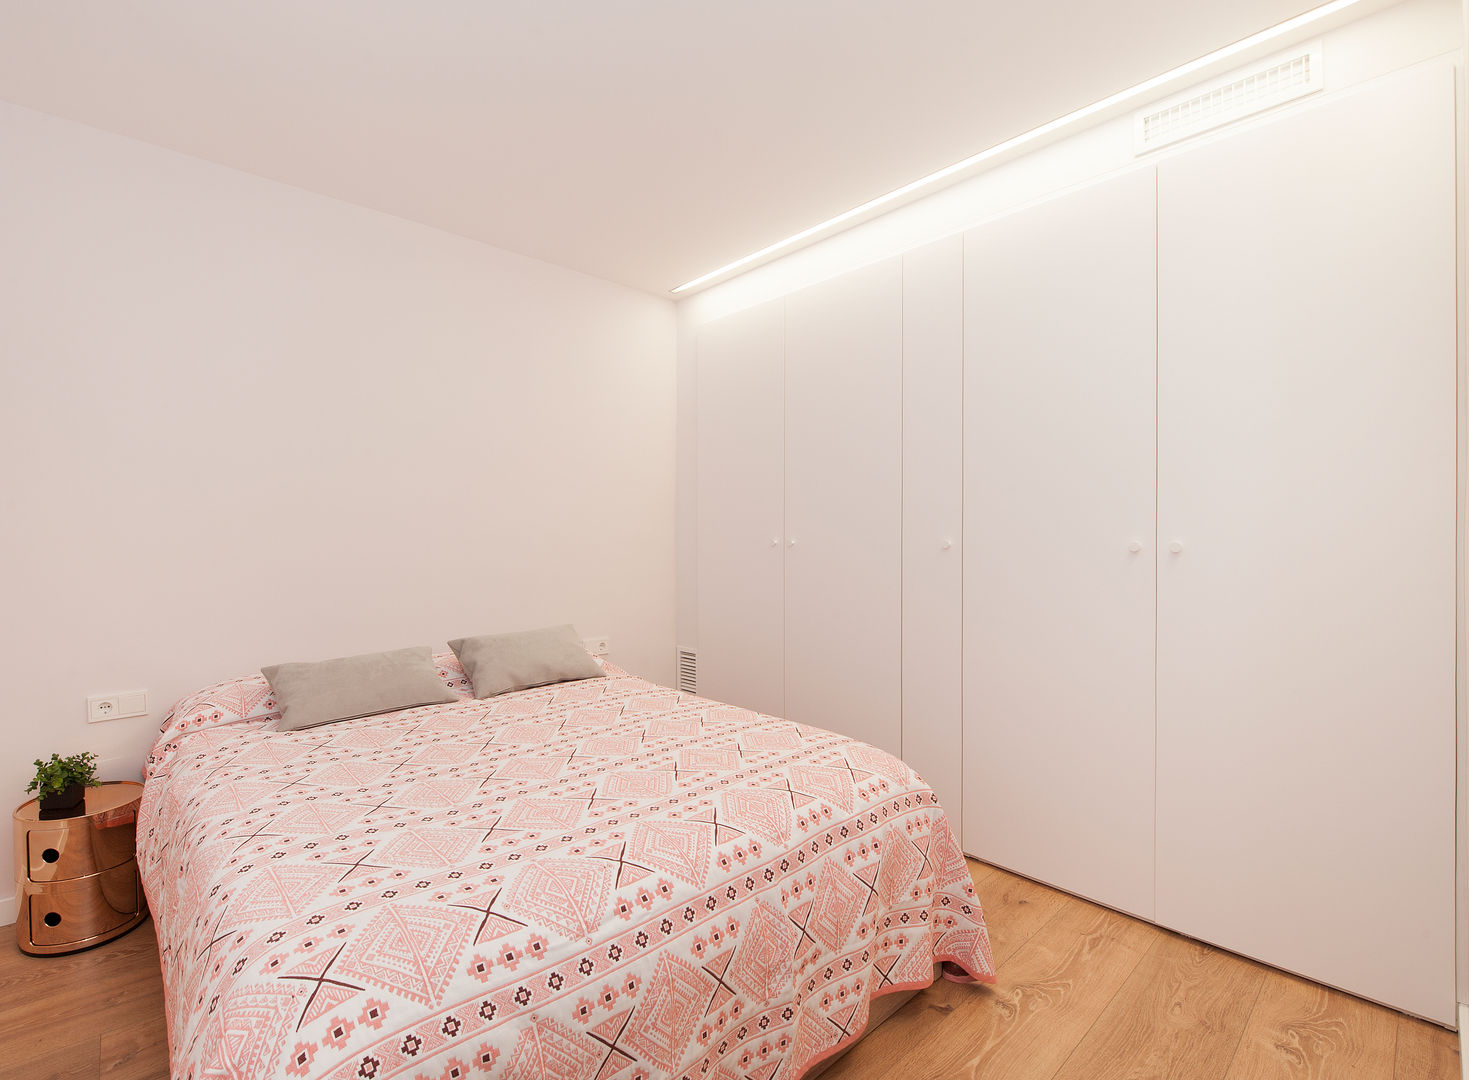 Restaurar la Armonía y el Equilibrio con el Feng Shui en este Apartamento en Barcelona, Cristina Jové Cristina Jové Modern style bedroom Beds & headboards